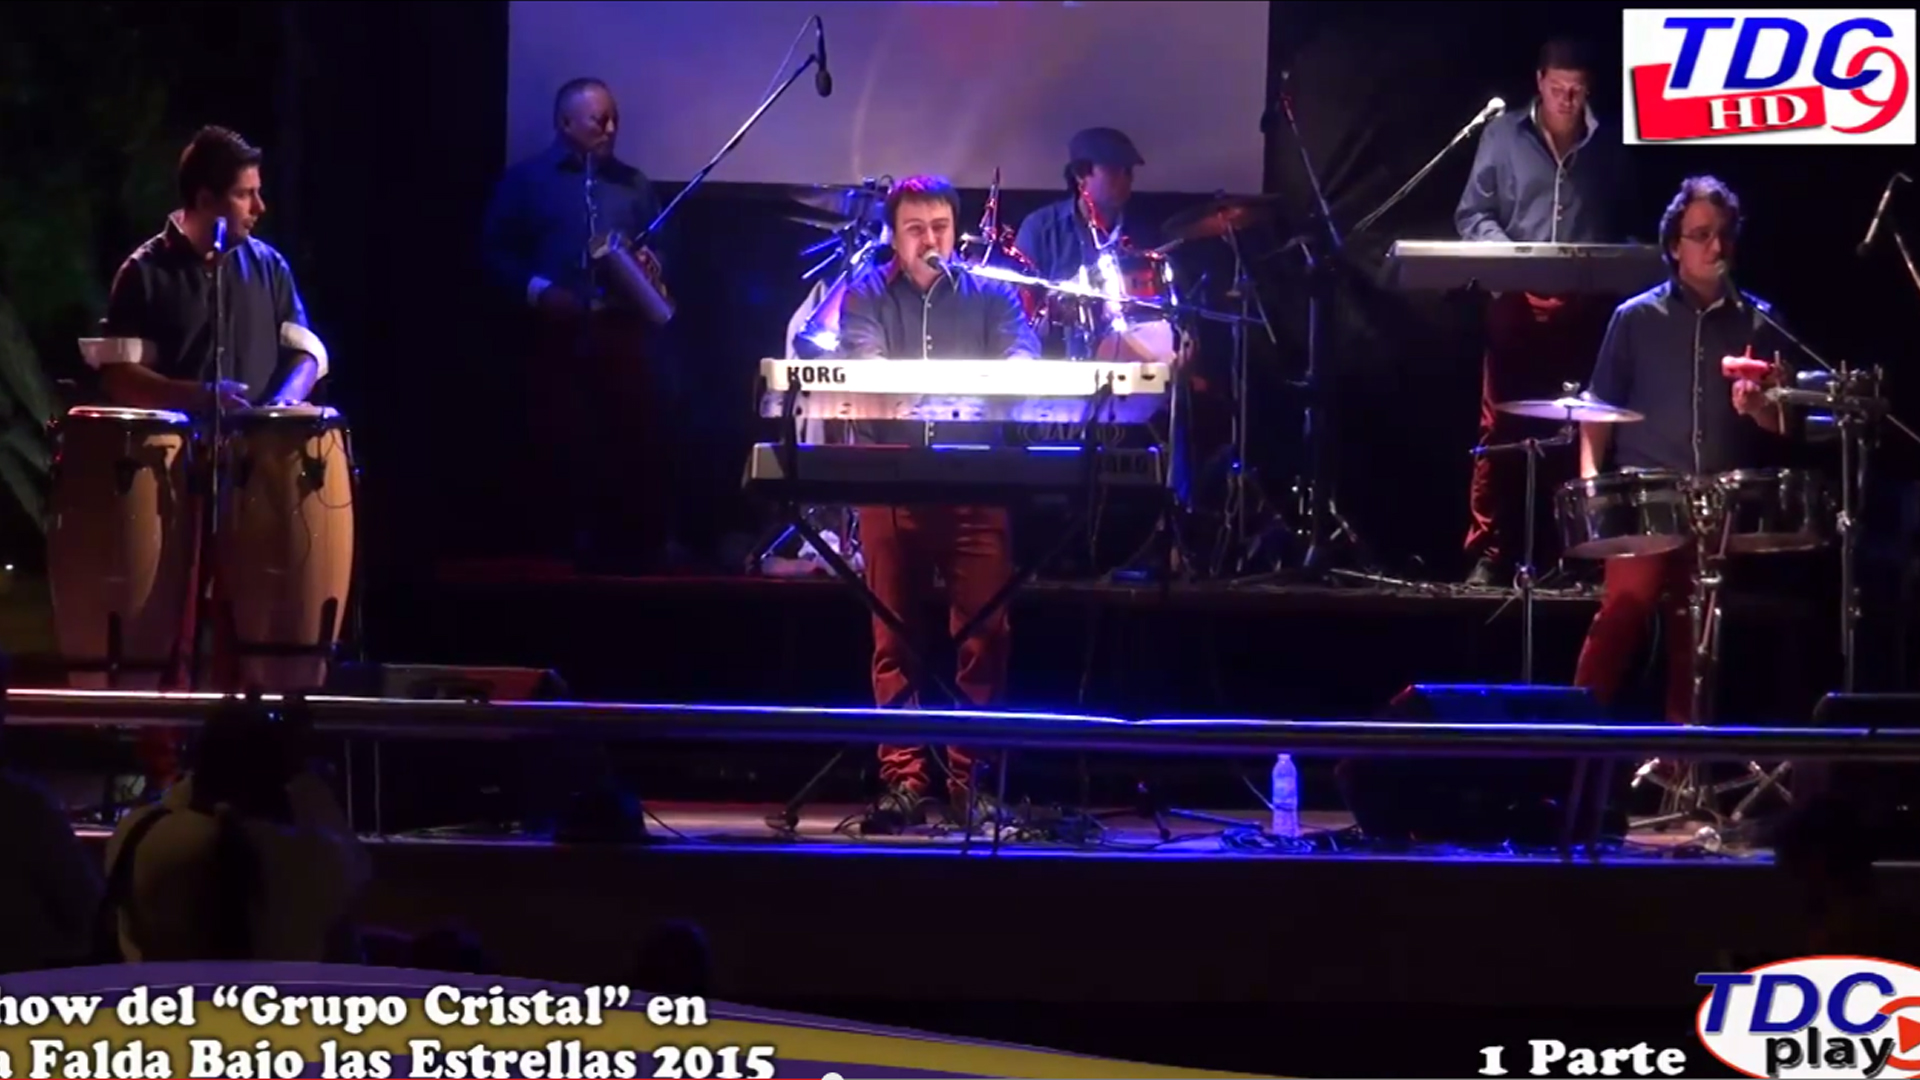 Show del “Grupo Cristal” en La Falda Bajo las Estrellas 2015